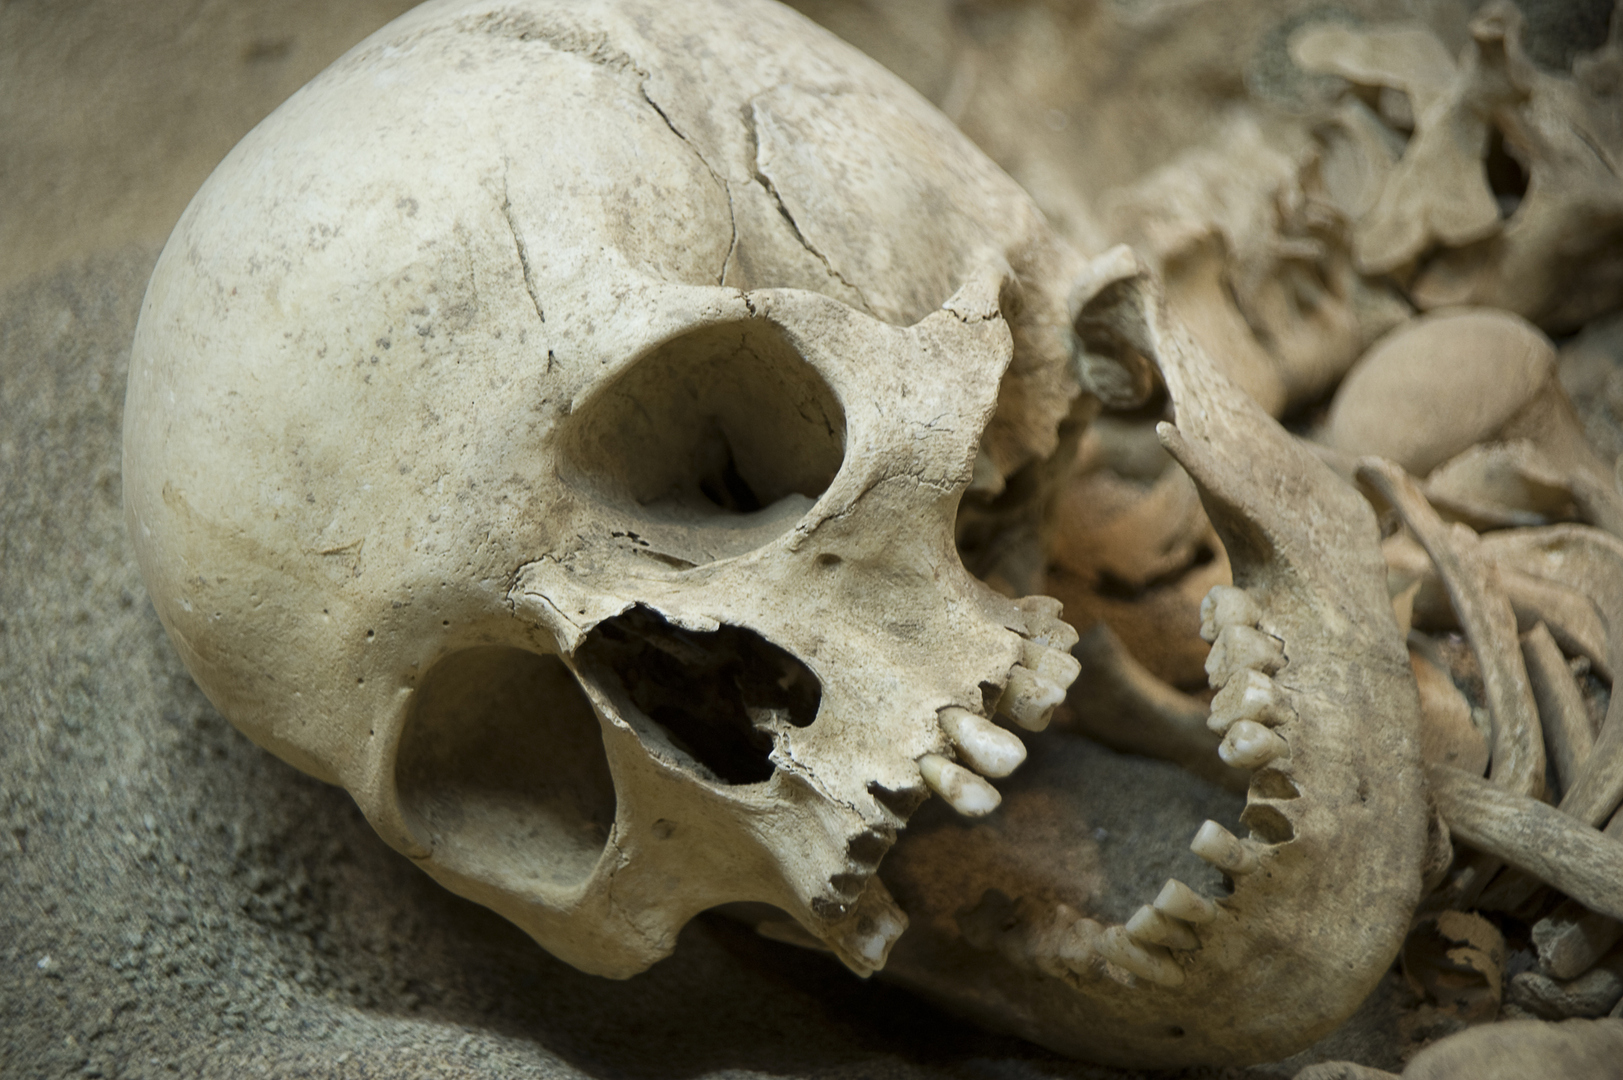 علماء الآثار يعيدون تشكيل وجه أنثى إنسان نياندرتال دفنت في كهف بالعراق (صور)